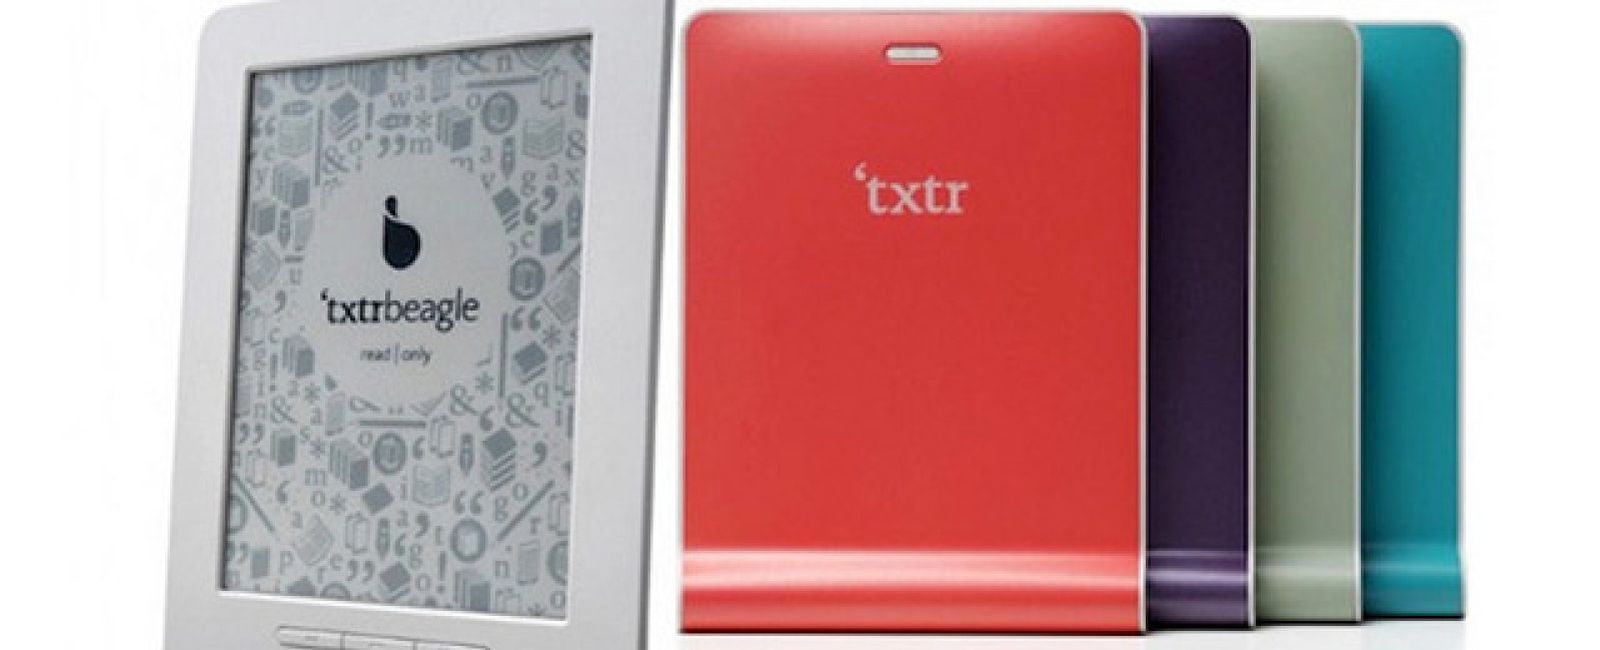 Foto: ¡Esto es 'low cost'! TXTR lanza un e-reader a pilas por solo 10€